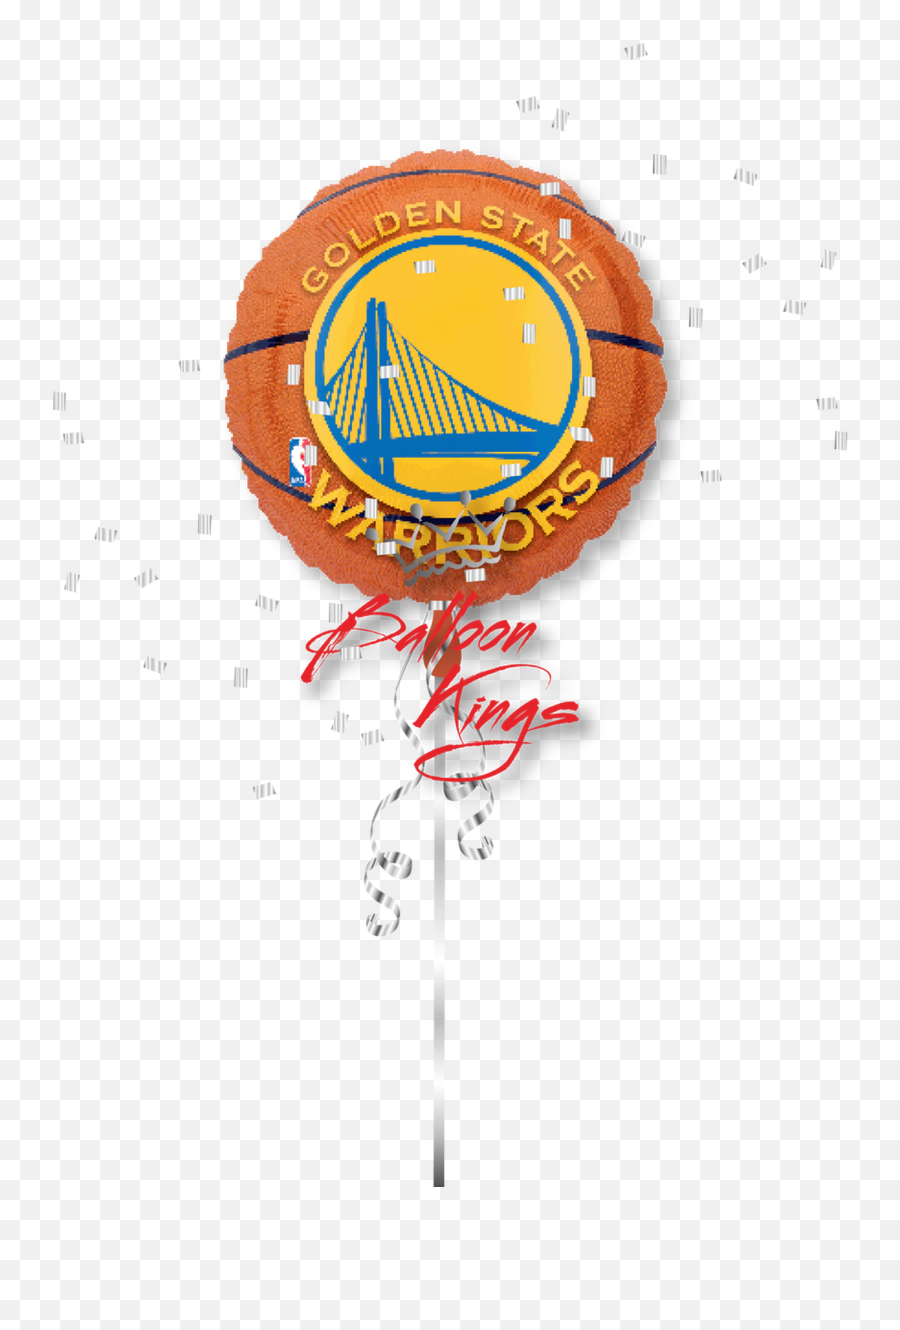 Golden State Warriors - Toronto Raptors Balloons Emoji,Warriors Emoji